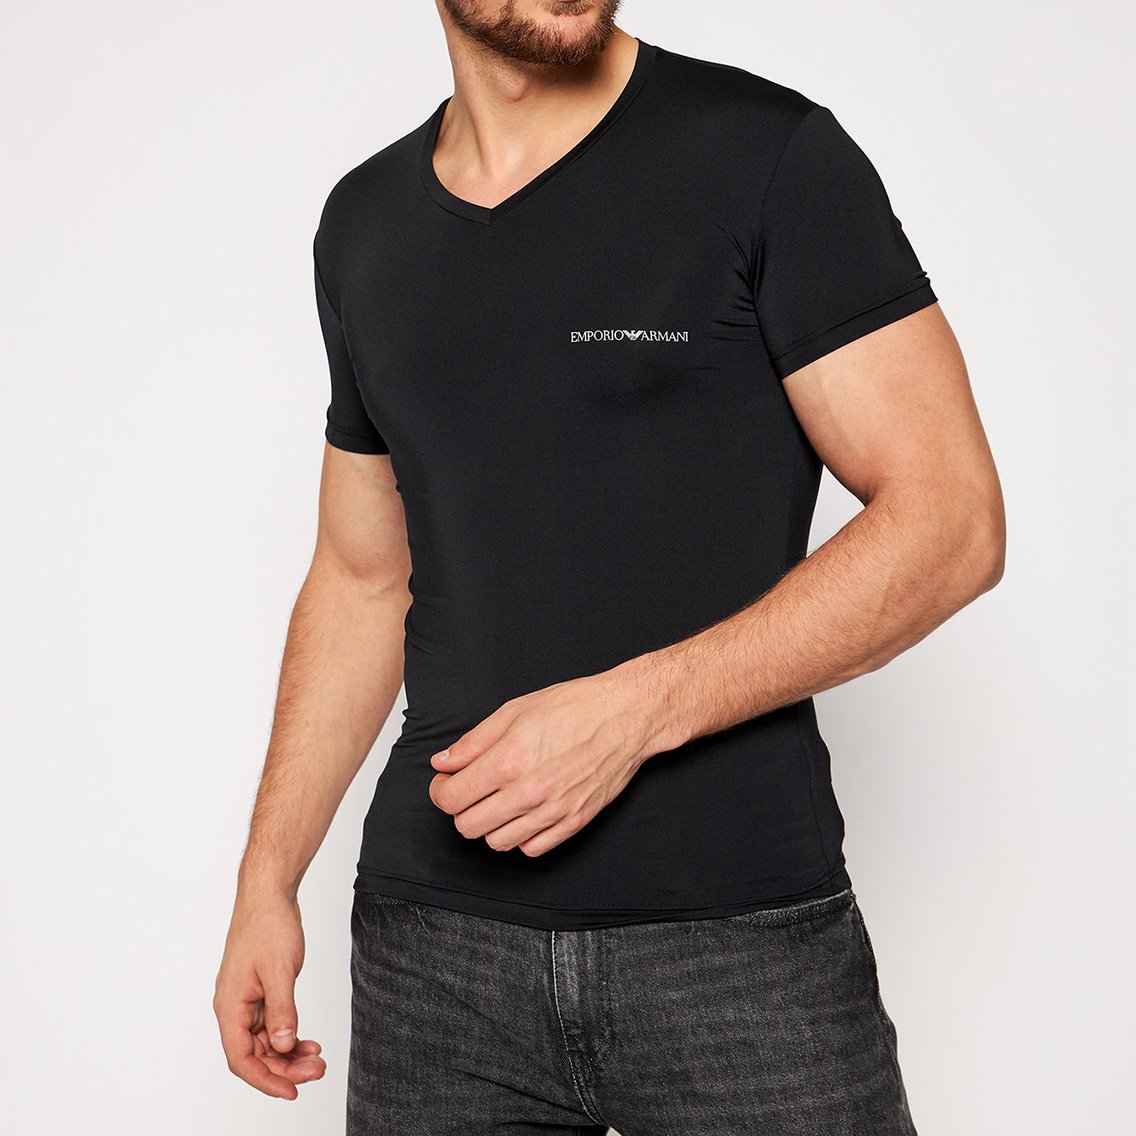 EMPORIO ARMANI(エンポリオアルマーニ)[110810-CS719-00120]:Tシャツ,男性下着,インナーの通販